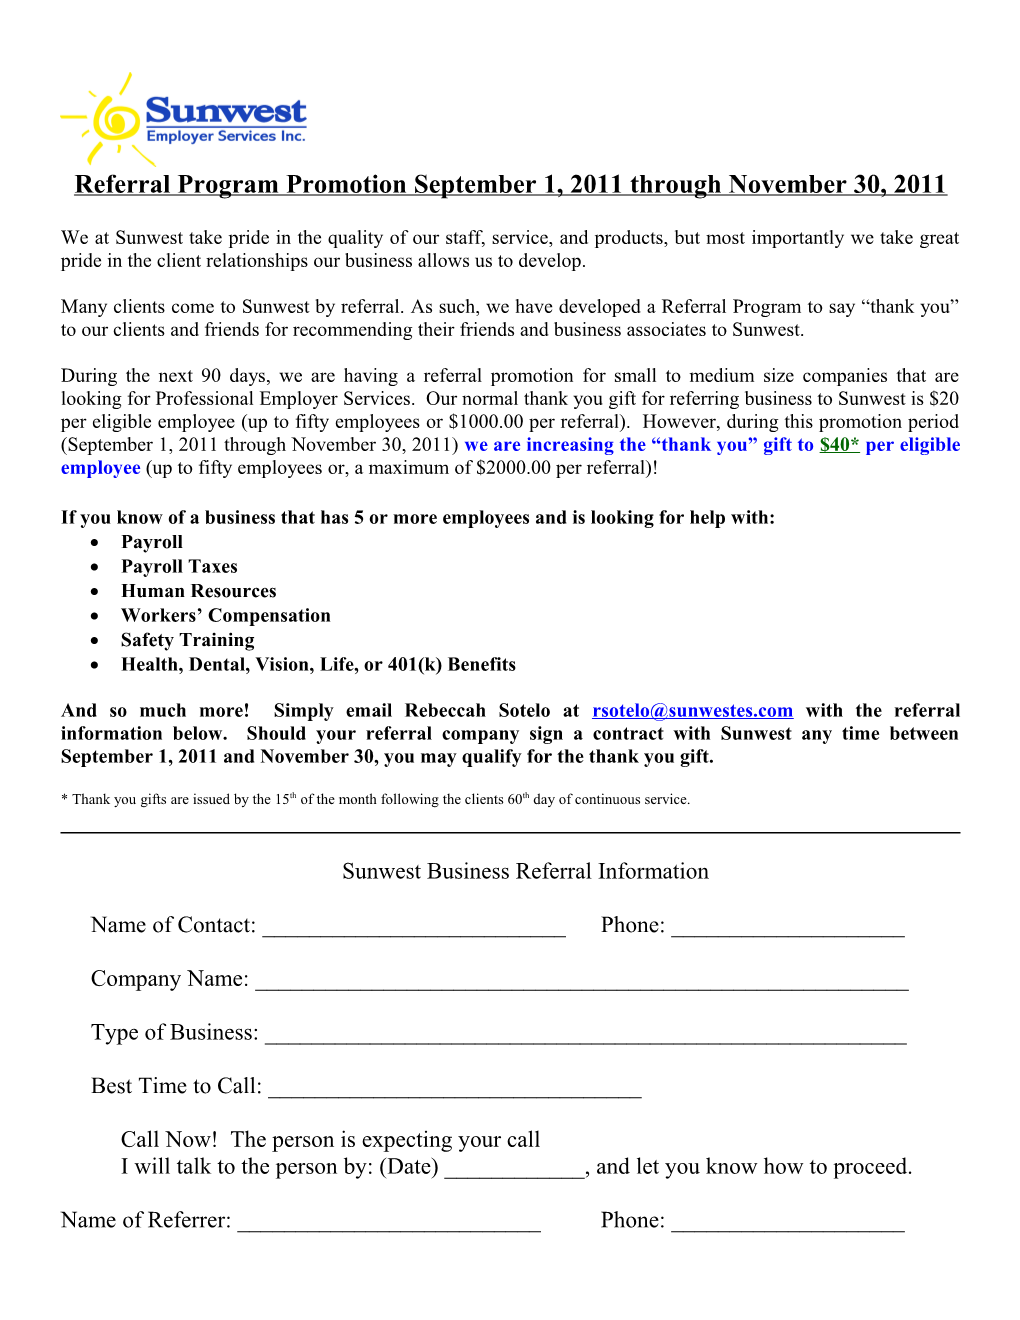 Referral Program Promotion September 1, 2011 Through November 30, 2011